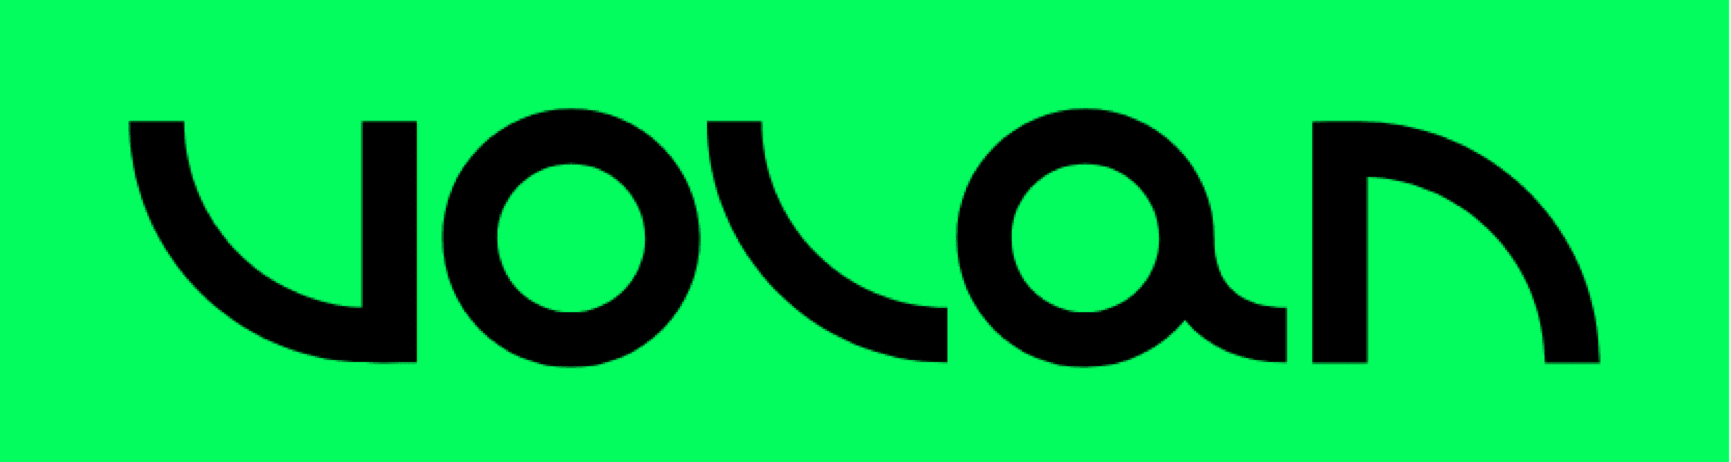 logo volan green